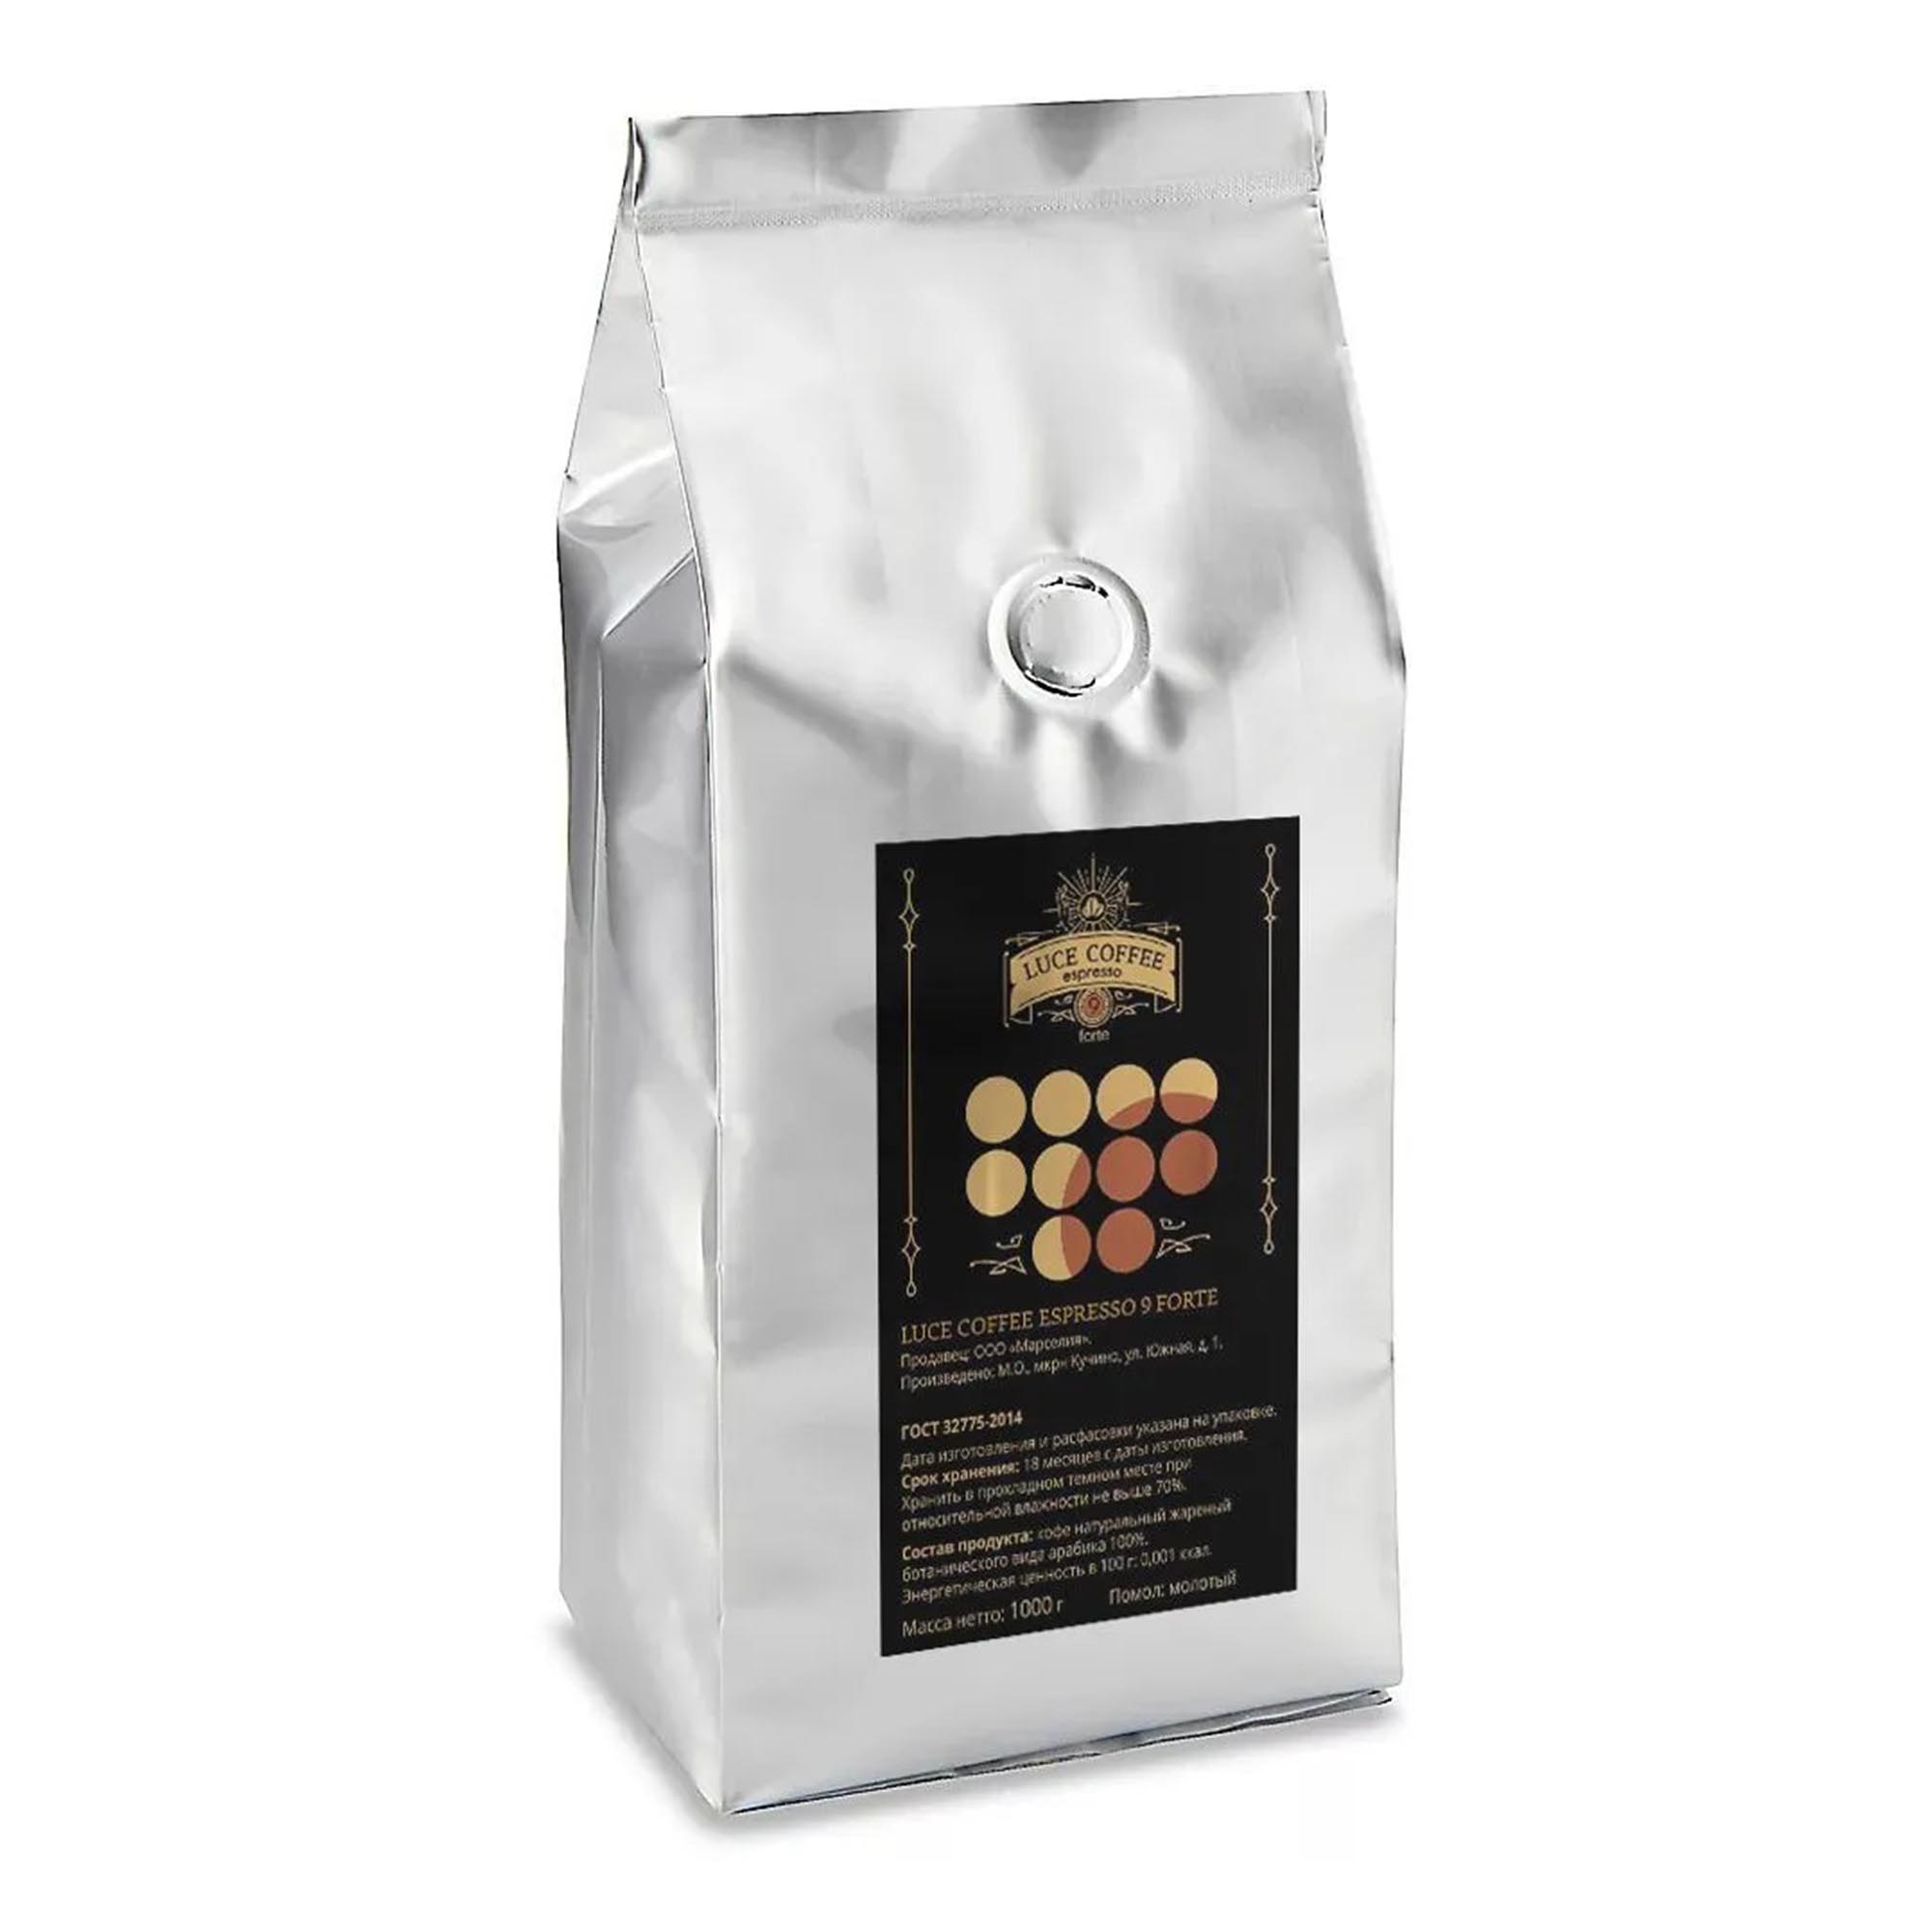 Кофе LUCE COFFEE молотый 9 Forte Арабика 100% 1 кг